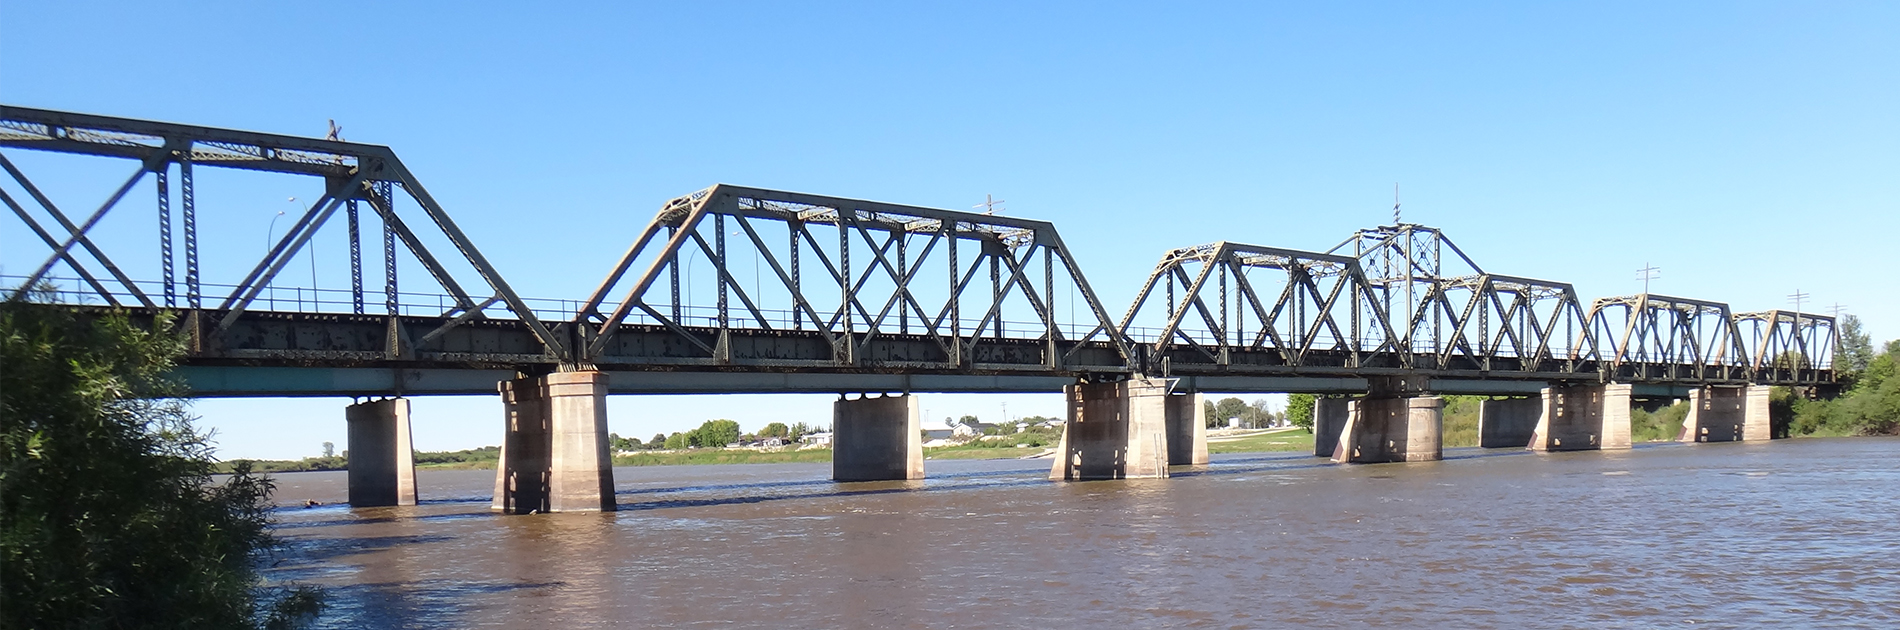 Le pont ferroviaire traversant la rivière Saskatchewan à The Pas, au Manitoba